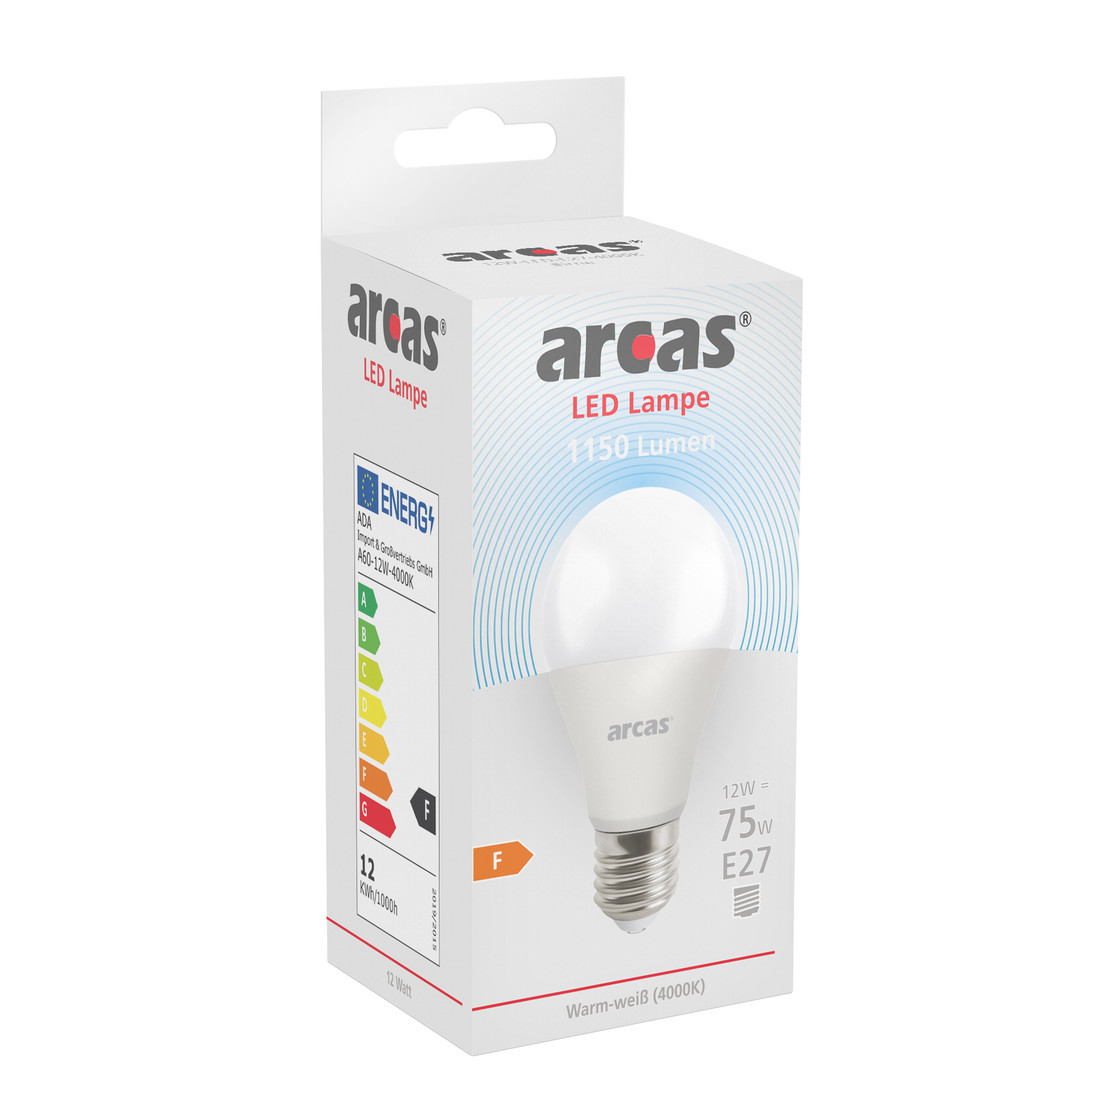 ARCAS LED Lampe / Birne A60 / E27 / 12W entspricht 80W Glühlampe / 11